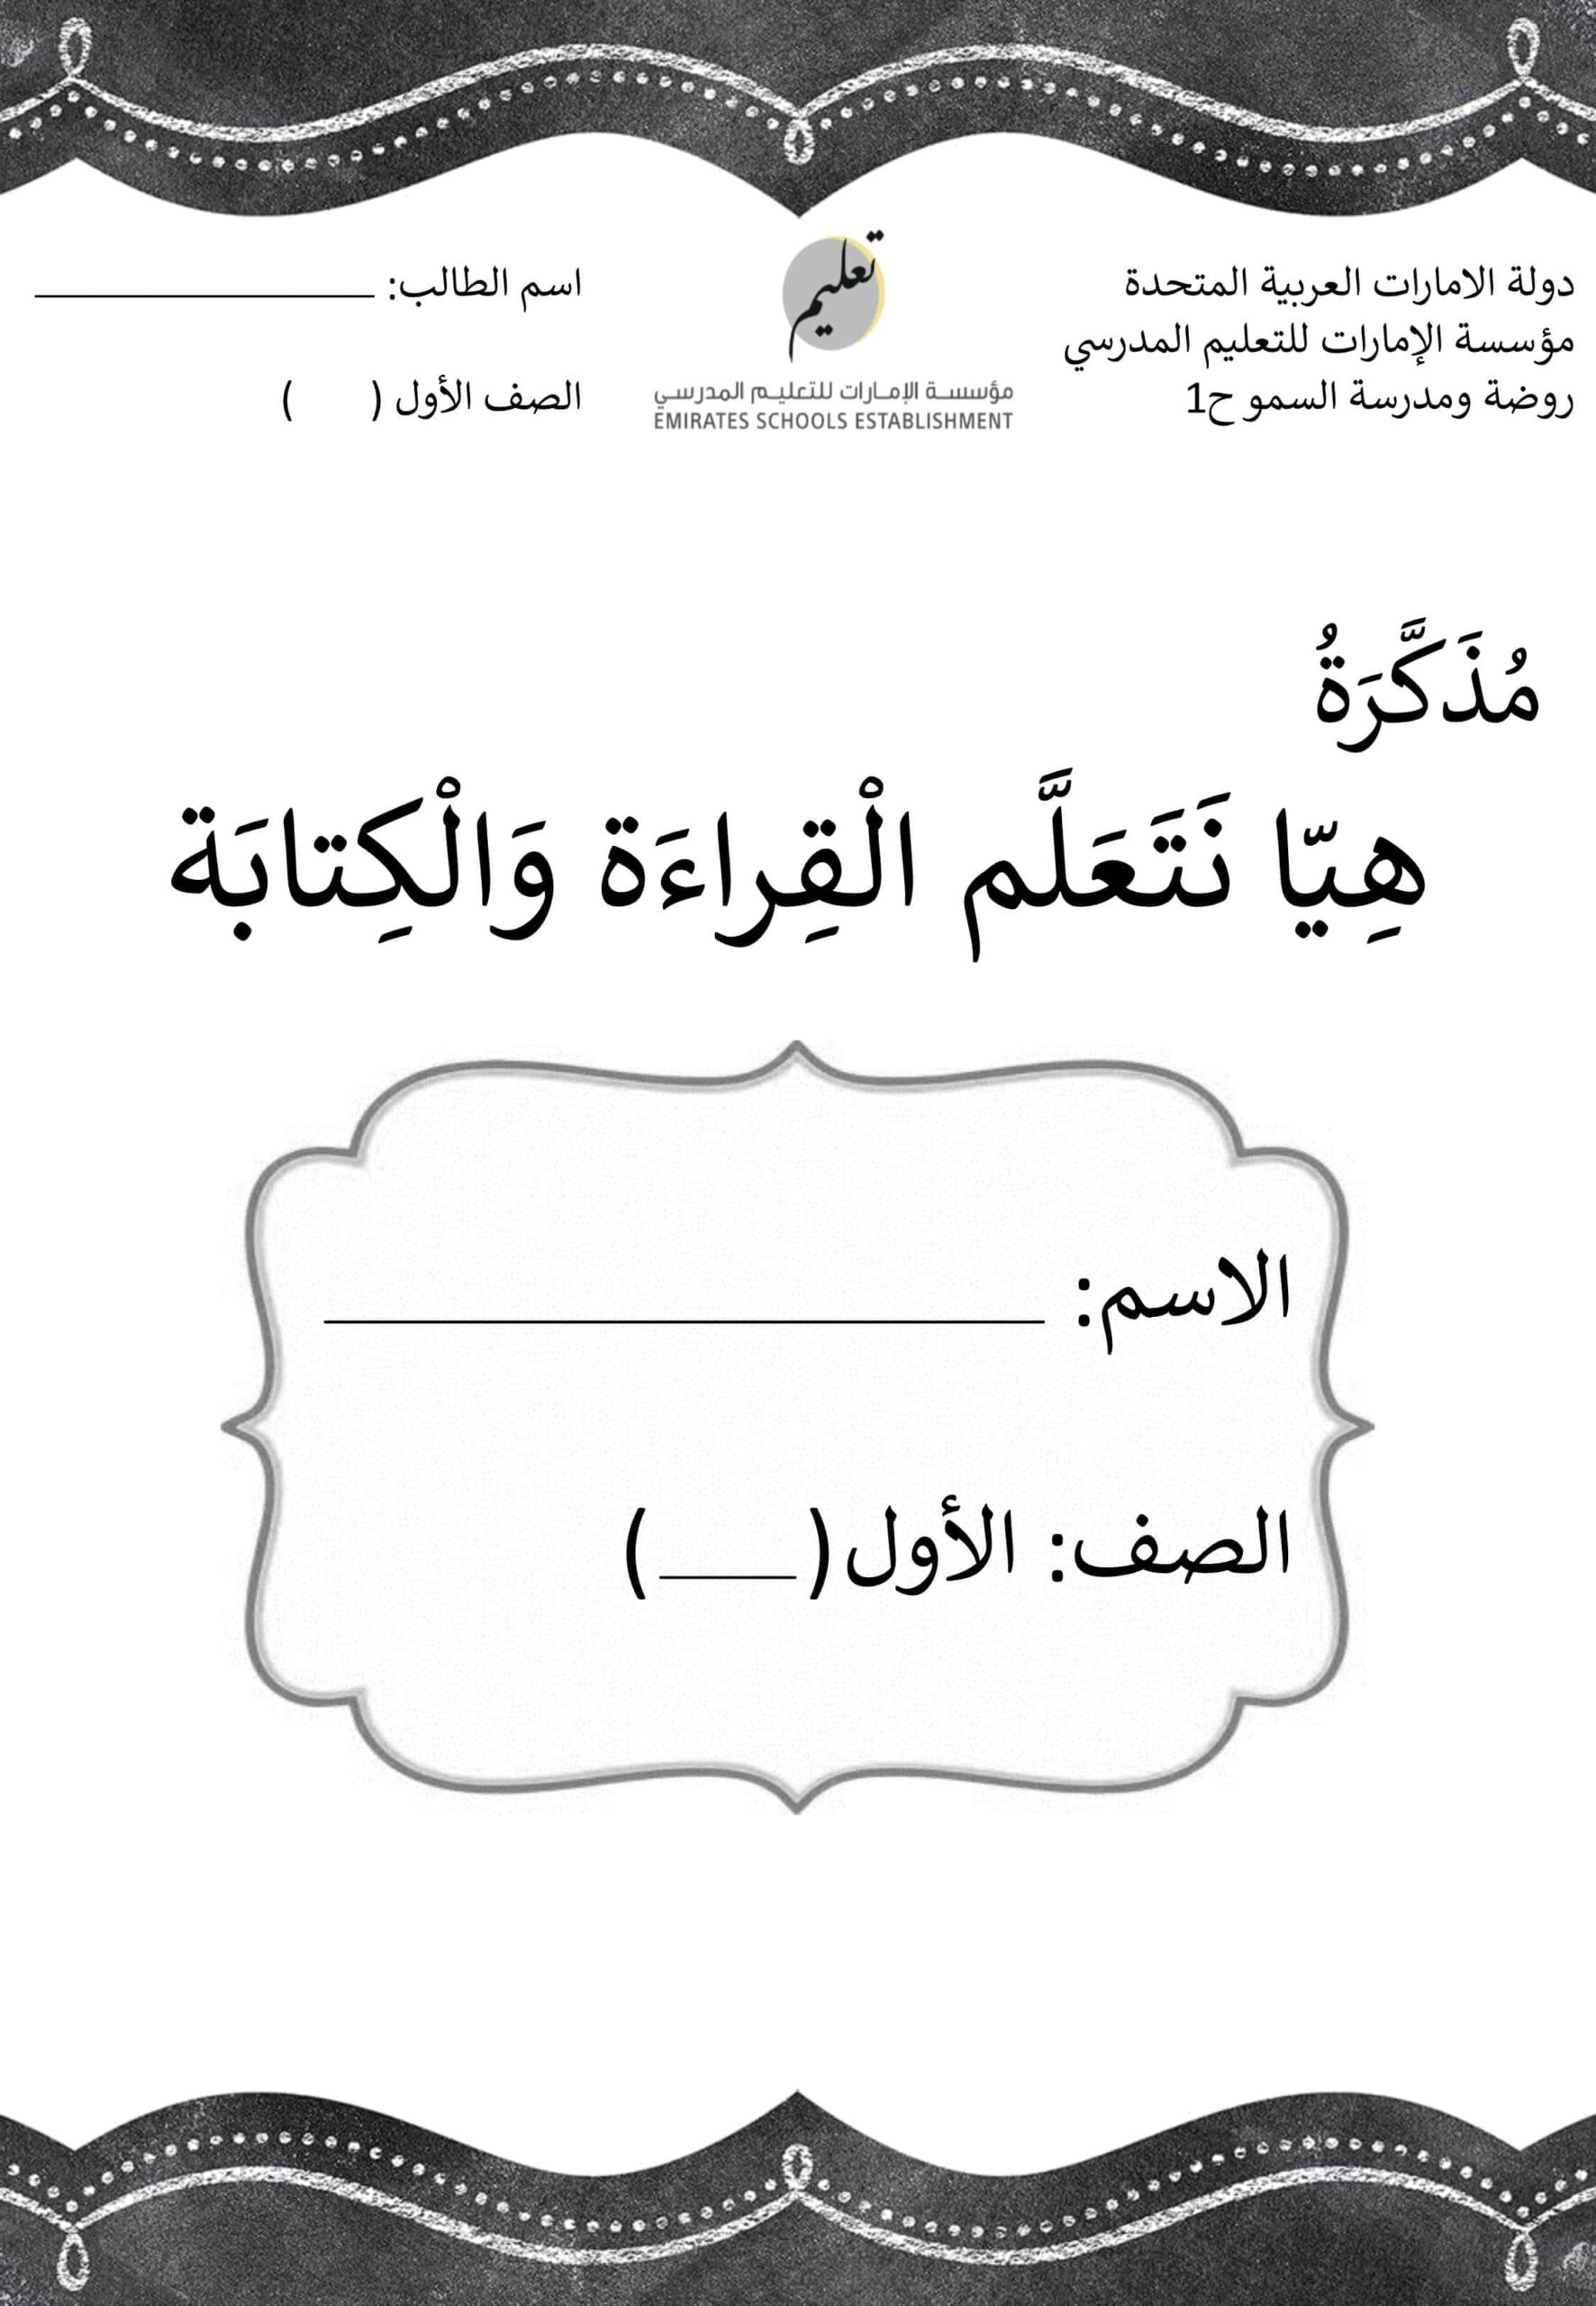 مذكرة هيا نتعلم القراءة والكتابة اللغة العربية الصف الأول